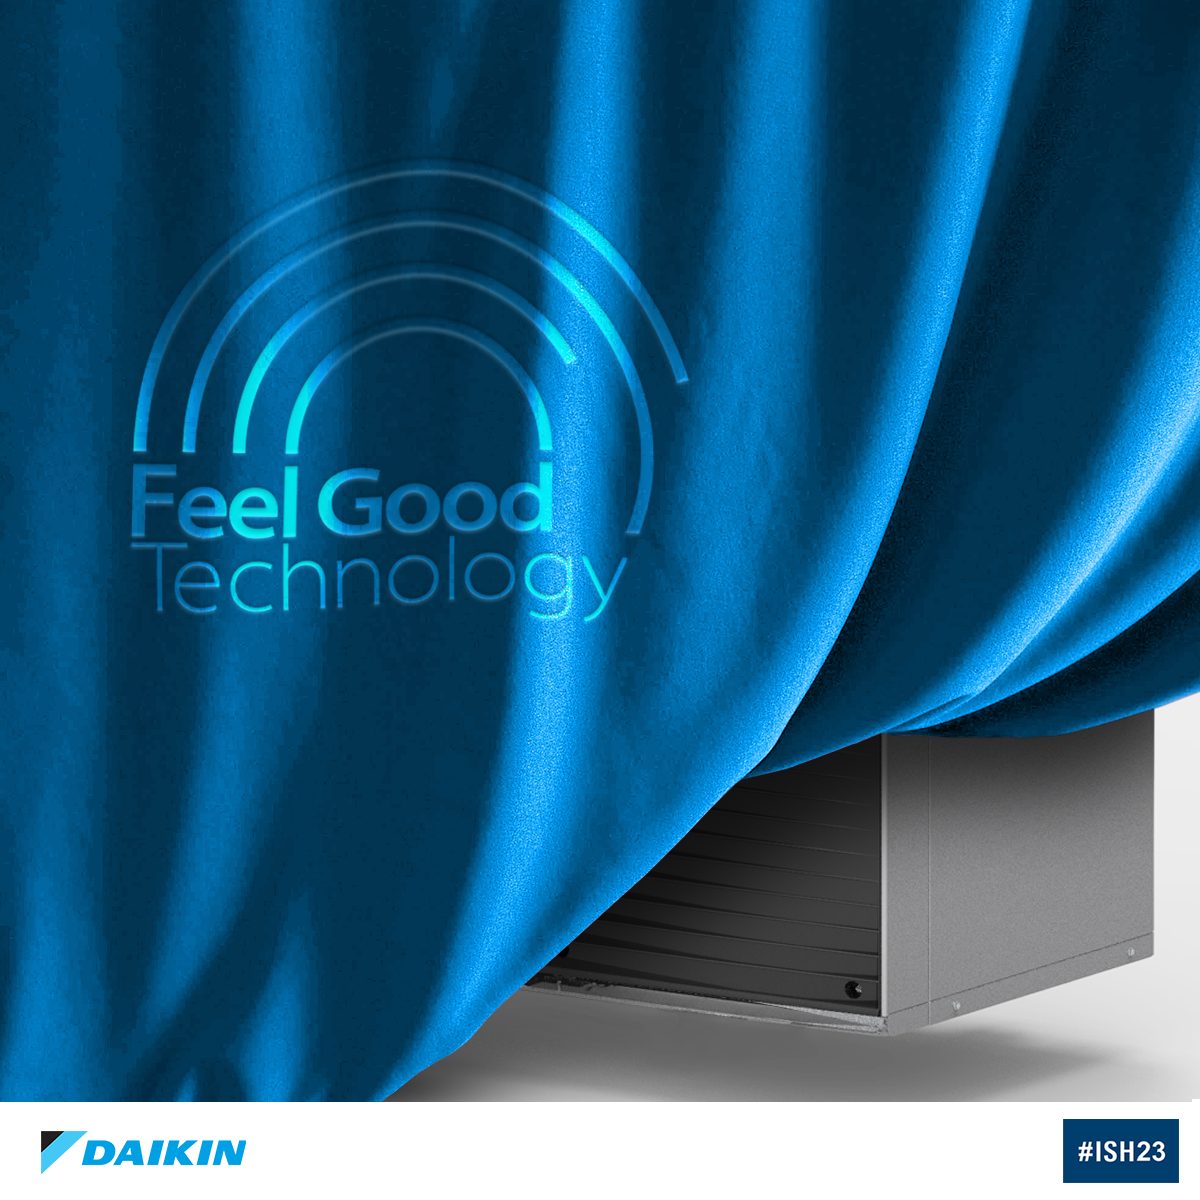 Daikin präsentiert auf der ISH 2023 seine ‘Feel Good Technology‘ 